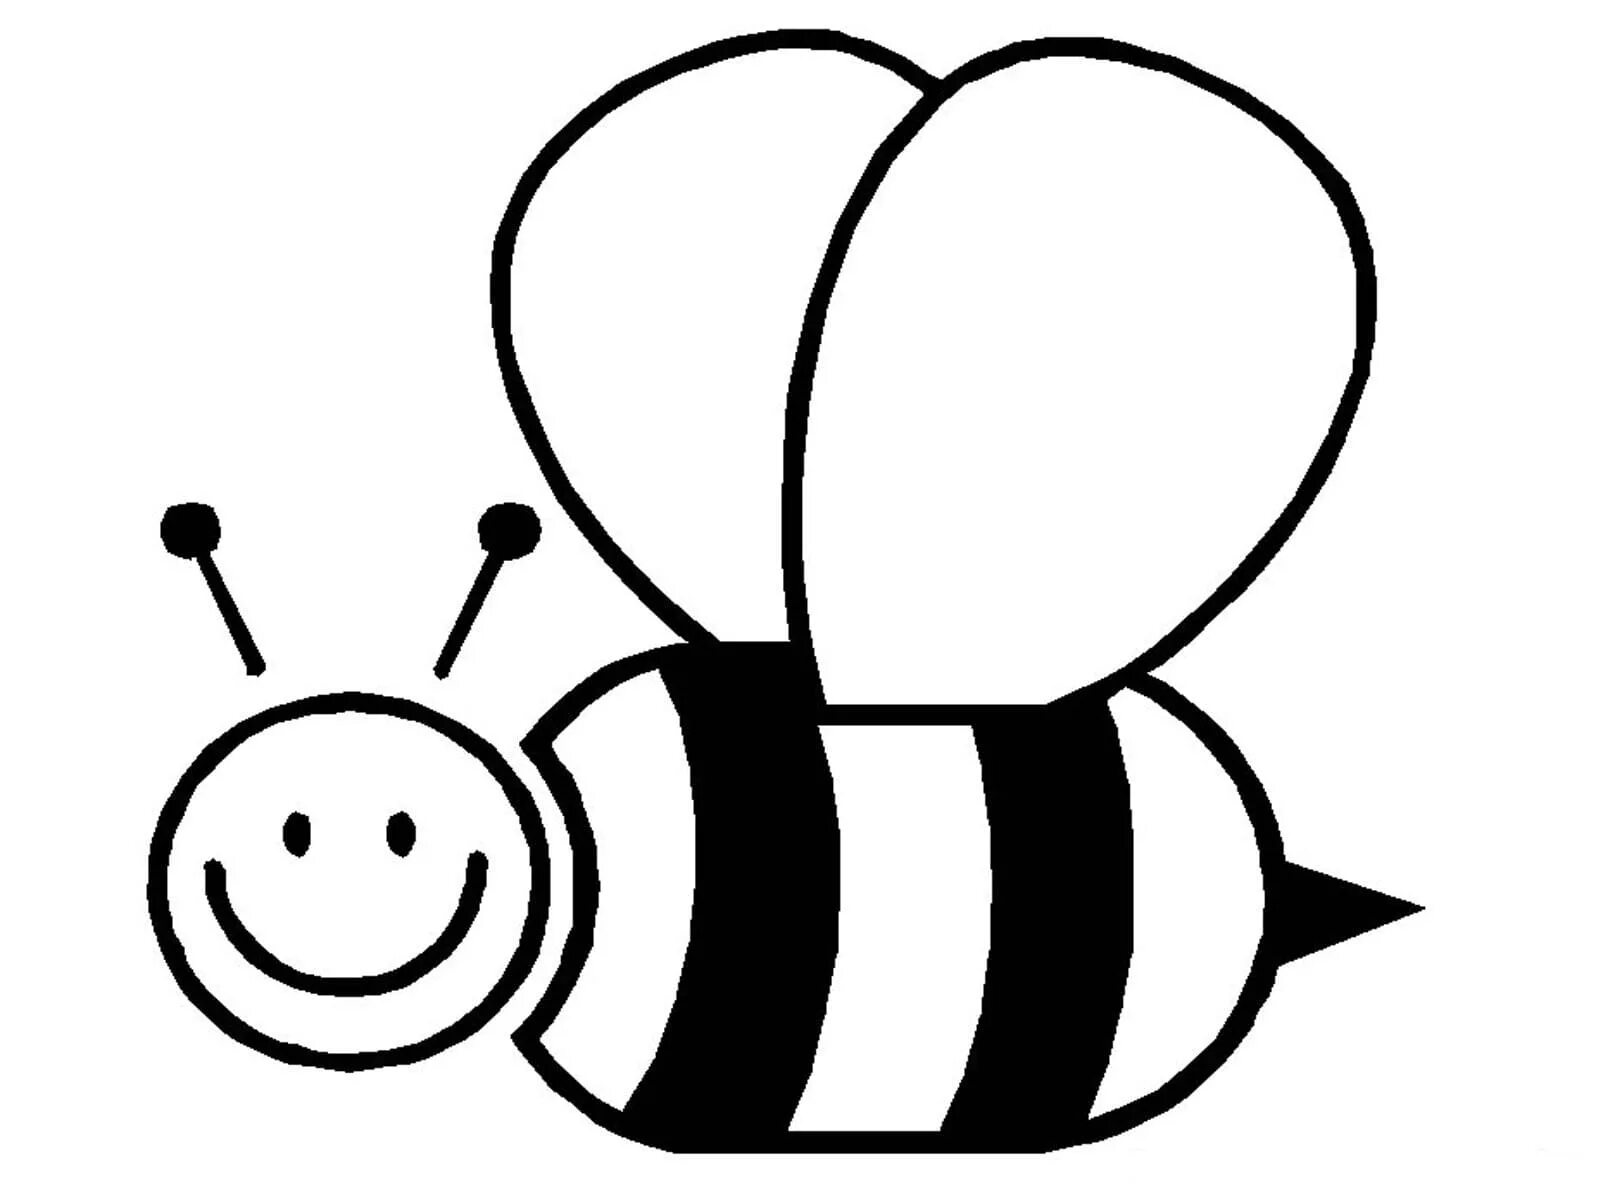 Черно белые картинки для детей раскраска. Пчела раскраска. Пчела раскраска для детей. Раскраска пчёлка для детей. Раскраскаидля малышей.